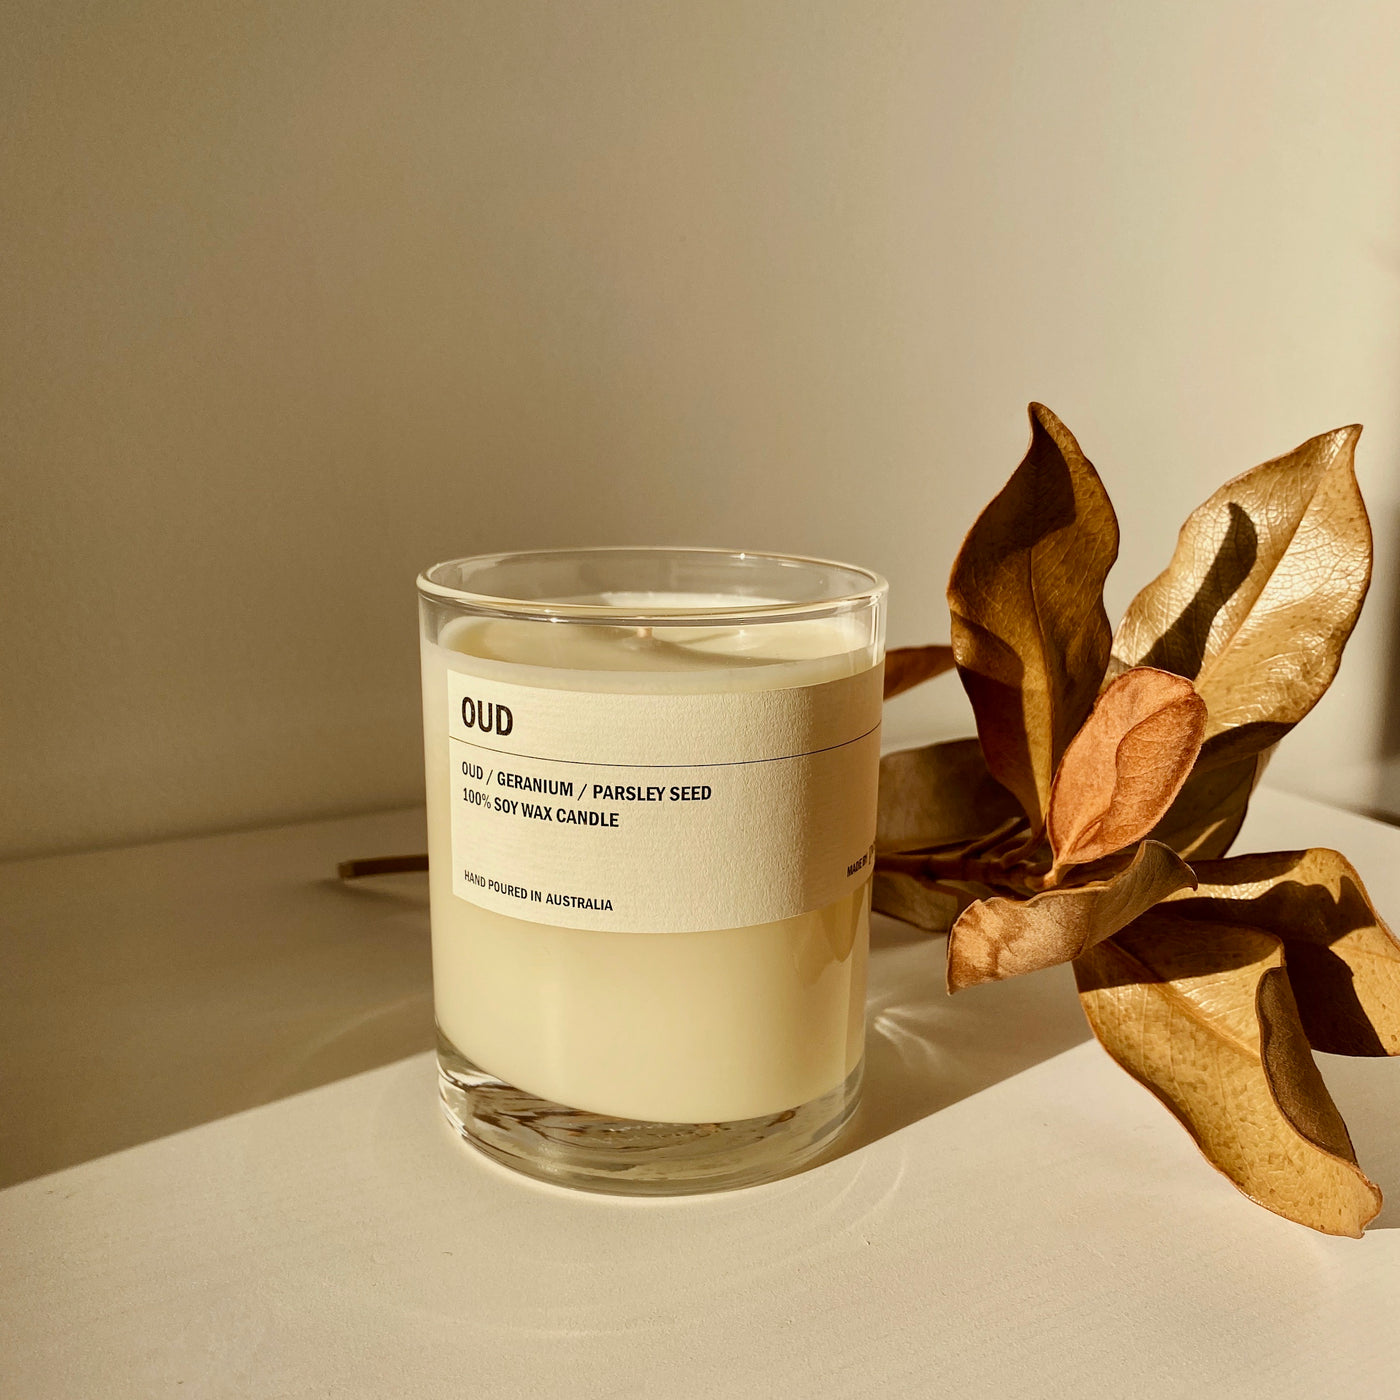 Posie candle OUD - Oudwood / Geranium / Parsley seed 300g - simplebeautifulthings